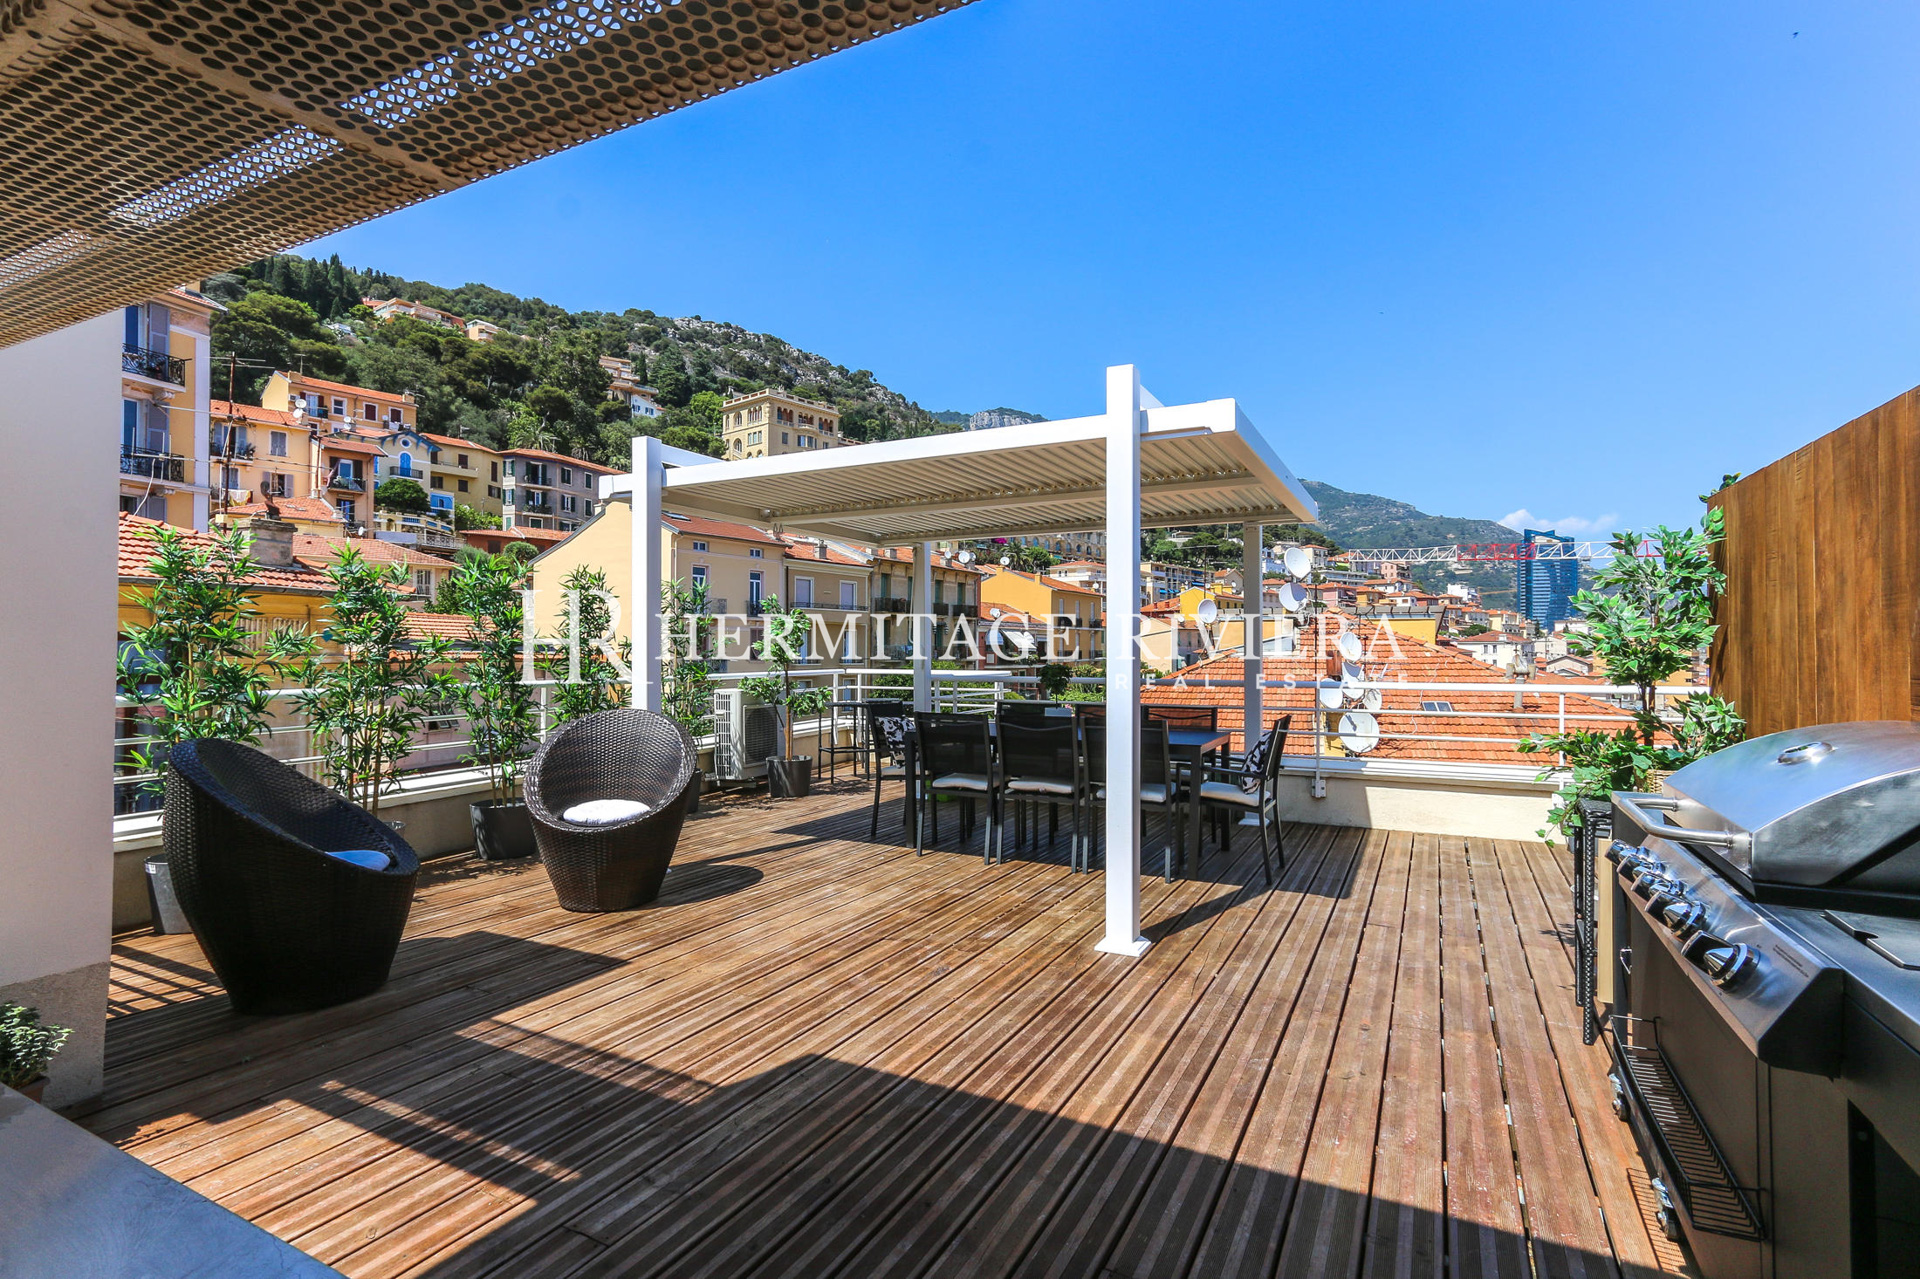 Penthouse-duplex renovated overlooking Monaco (image 6)